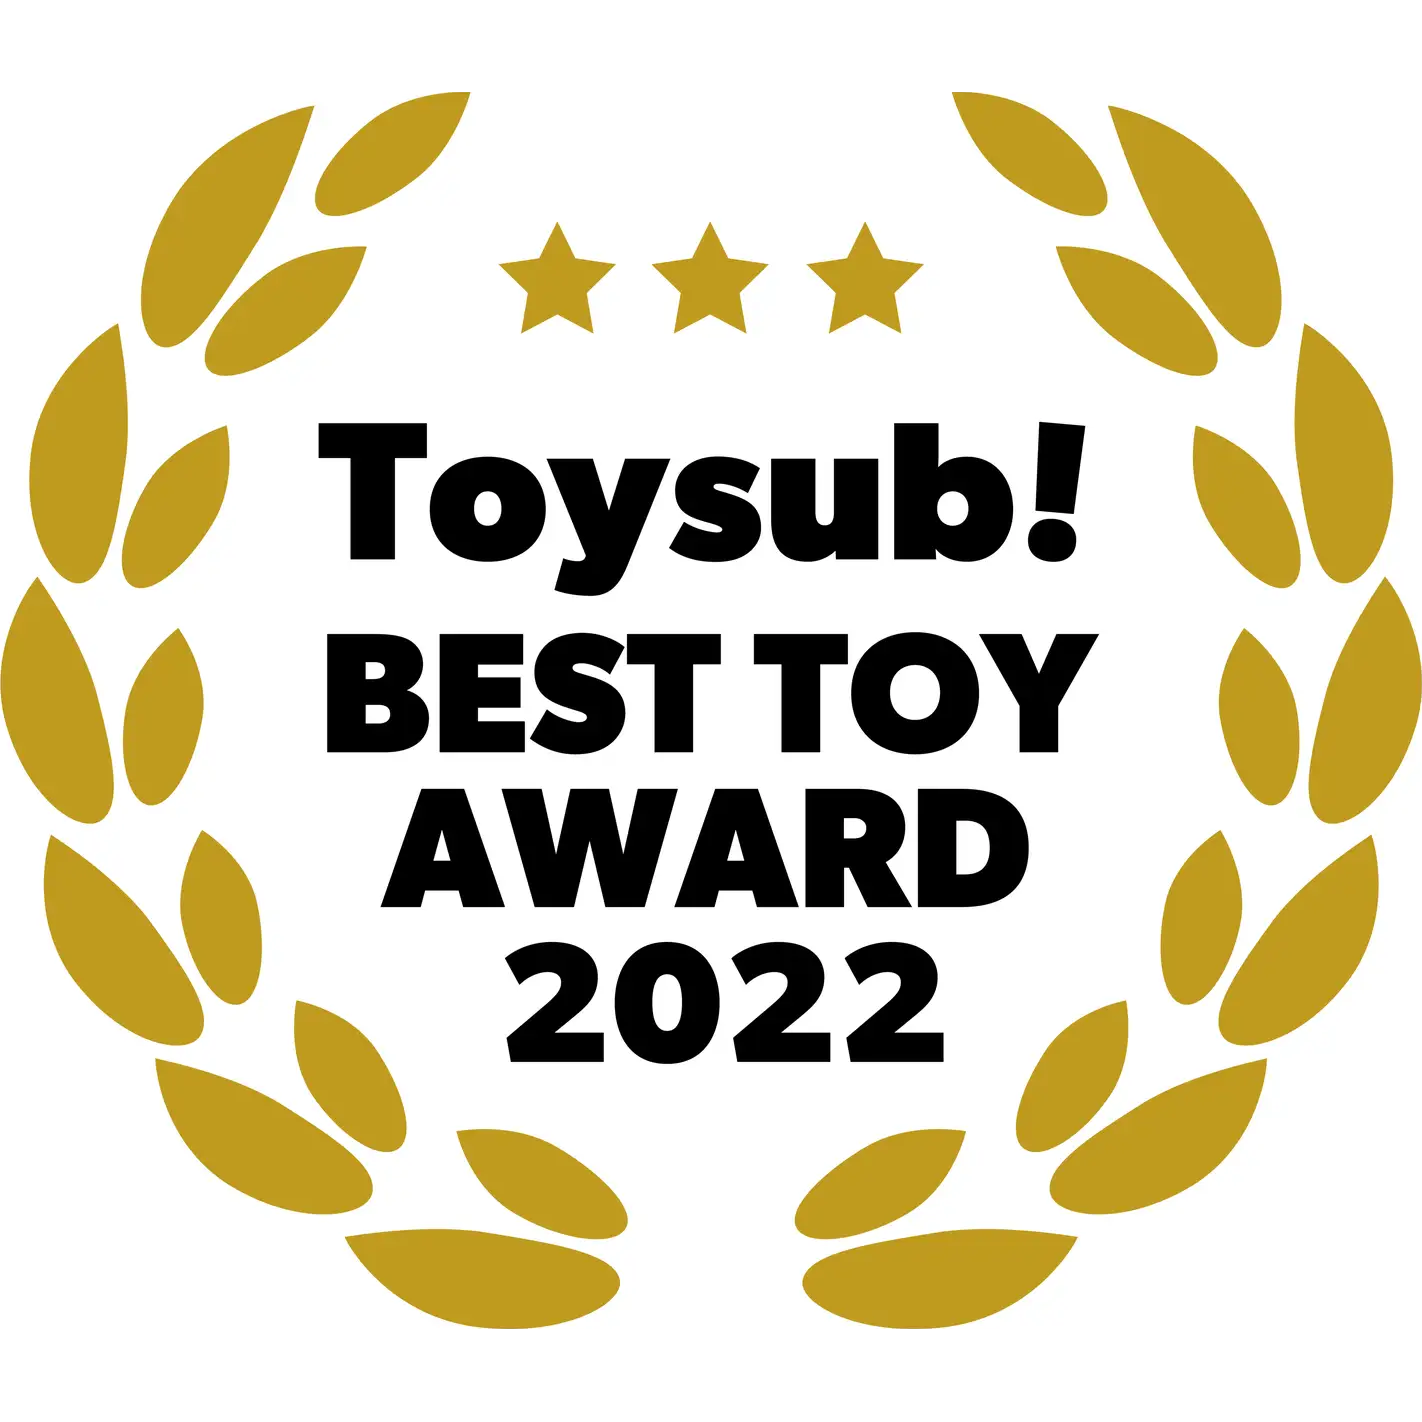 Toysub!BEST TOY AWARD 2022